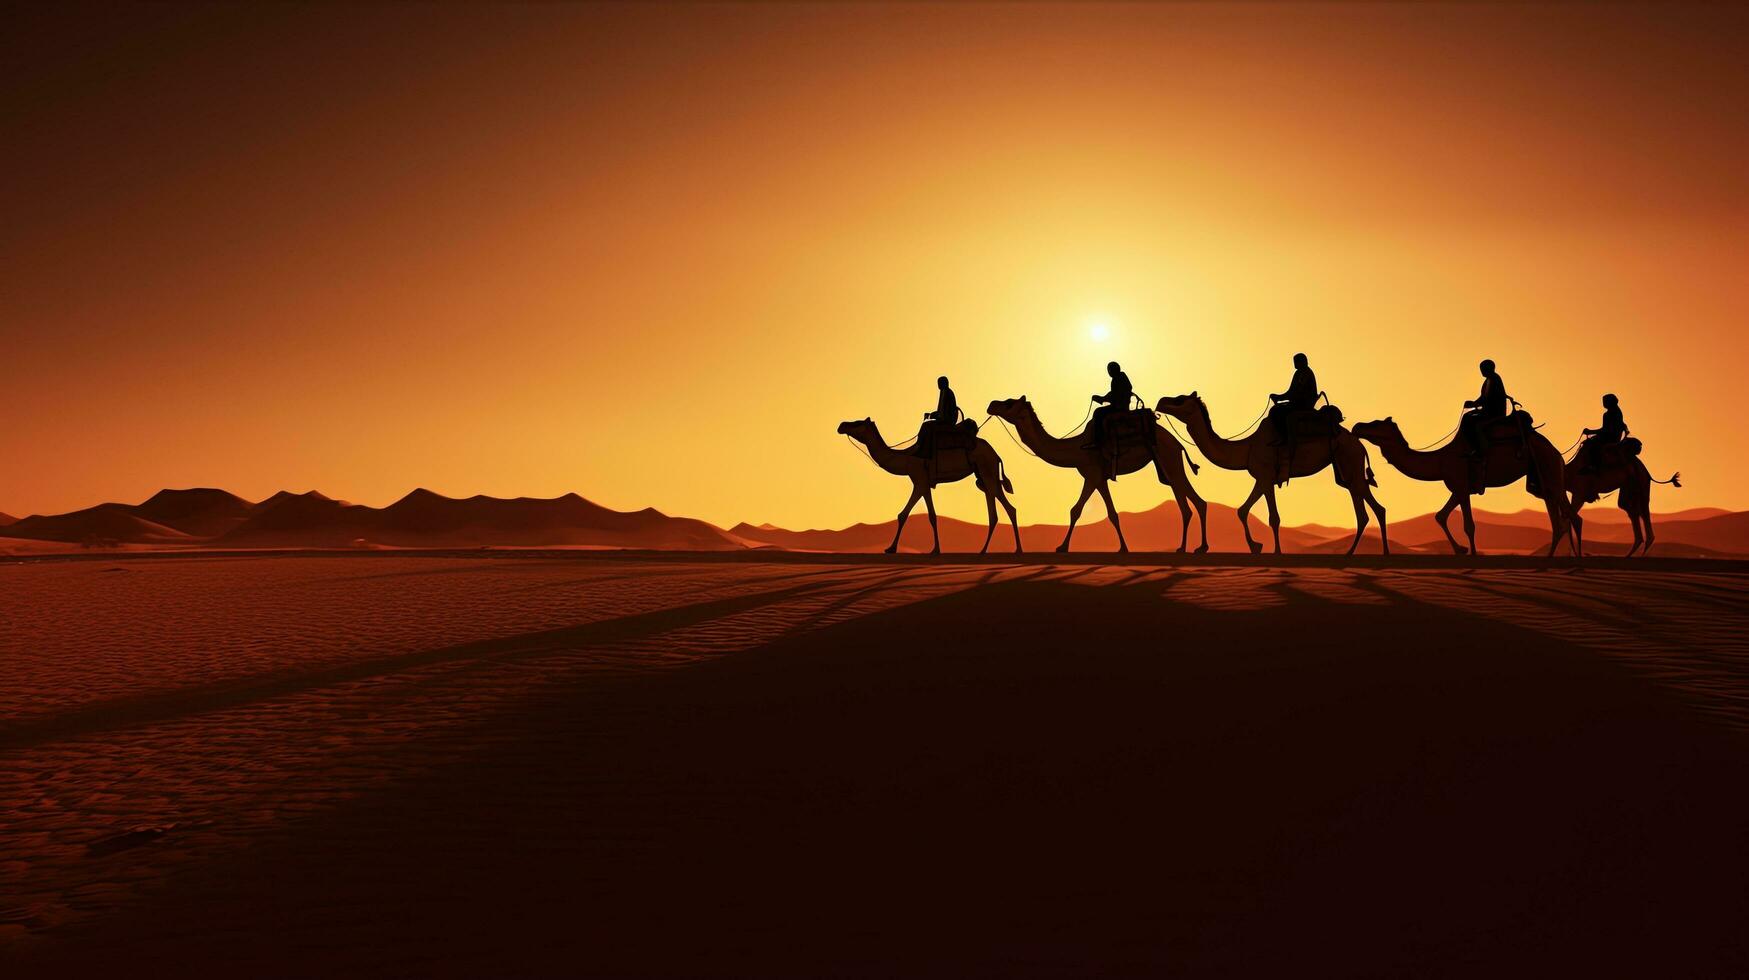 chameau visites guidées dans Sahara désert guidé par une berbère avec chameau ombres. silhouette concept photo